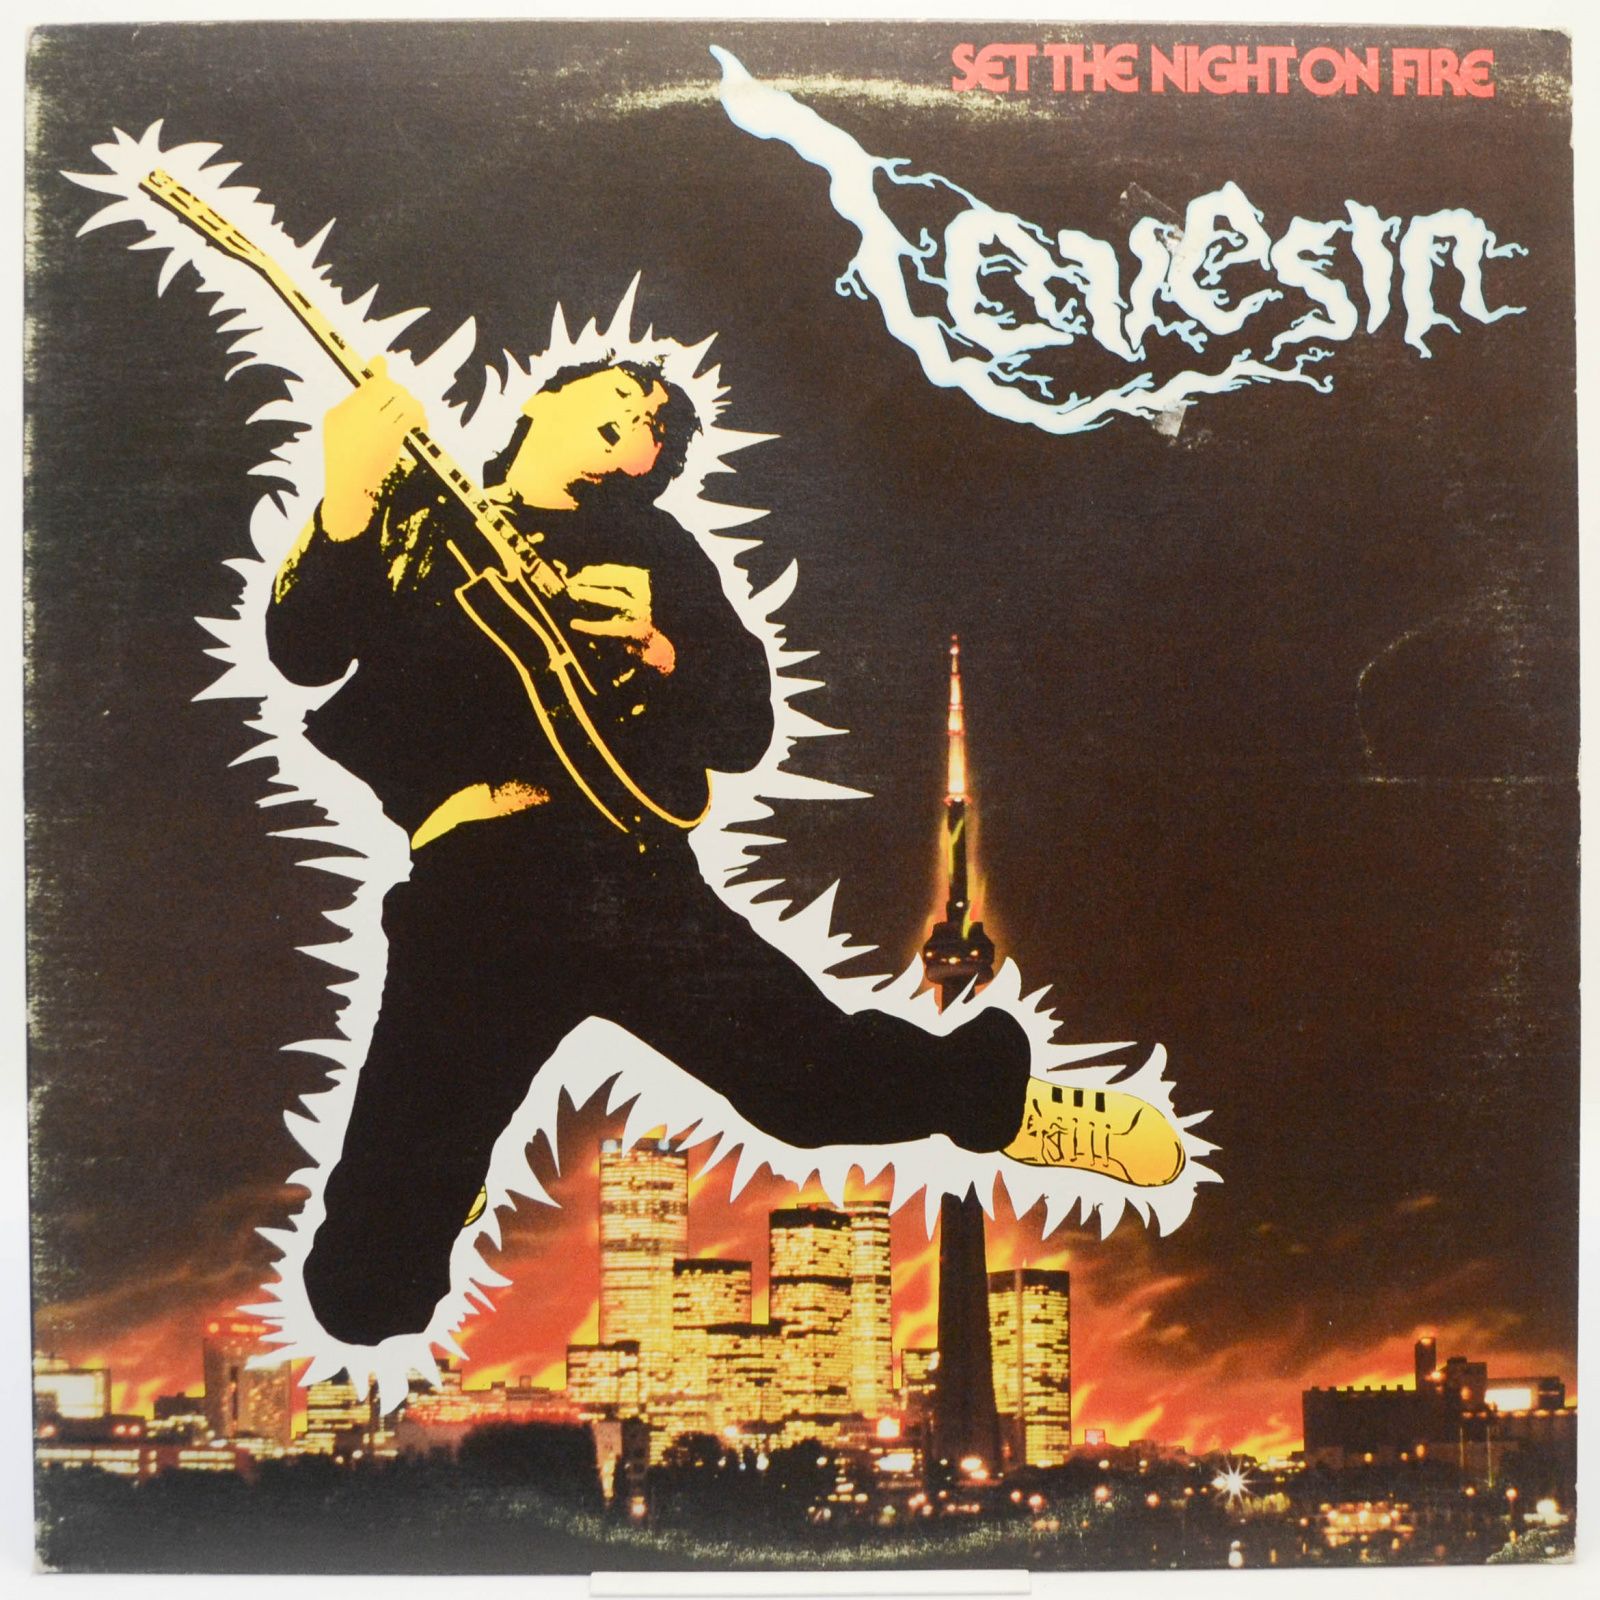 Lovesin — Set The Night On Fire, 1980